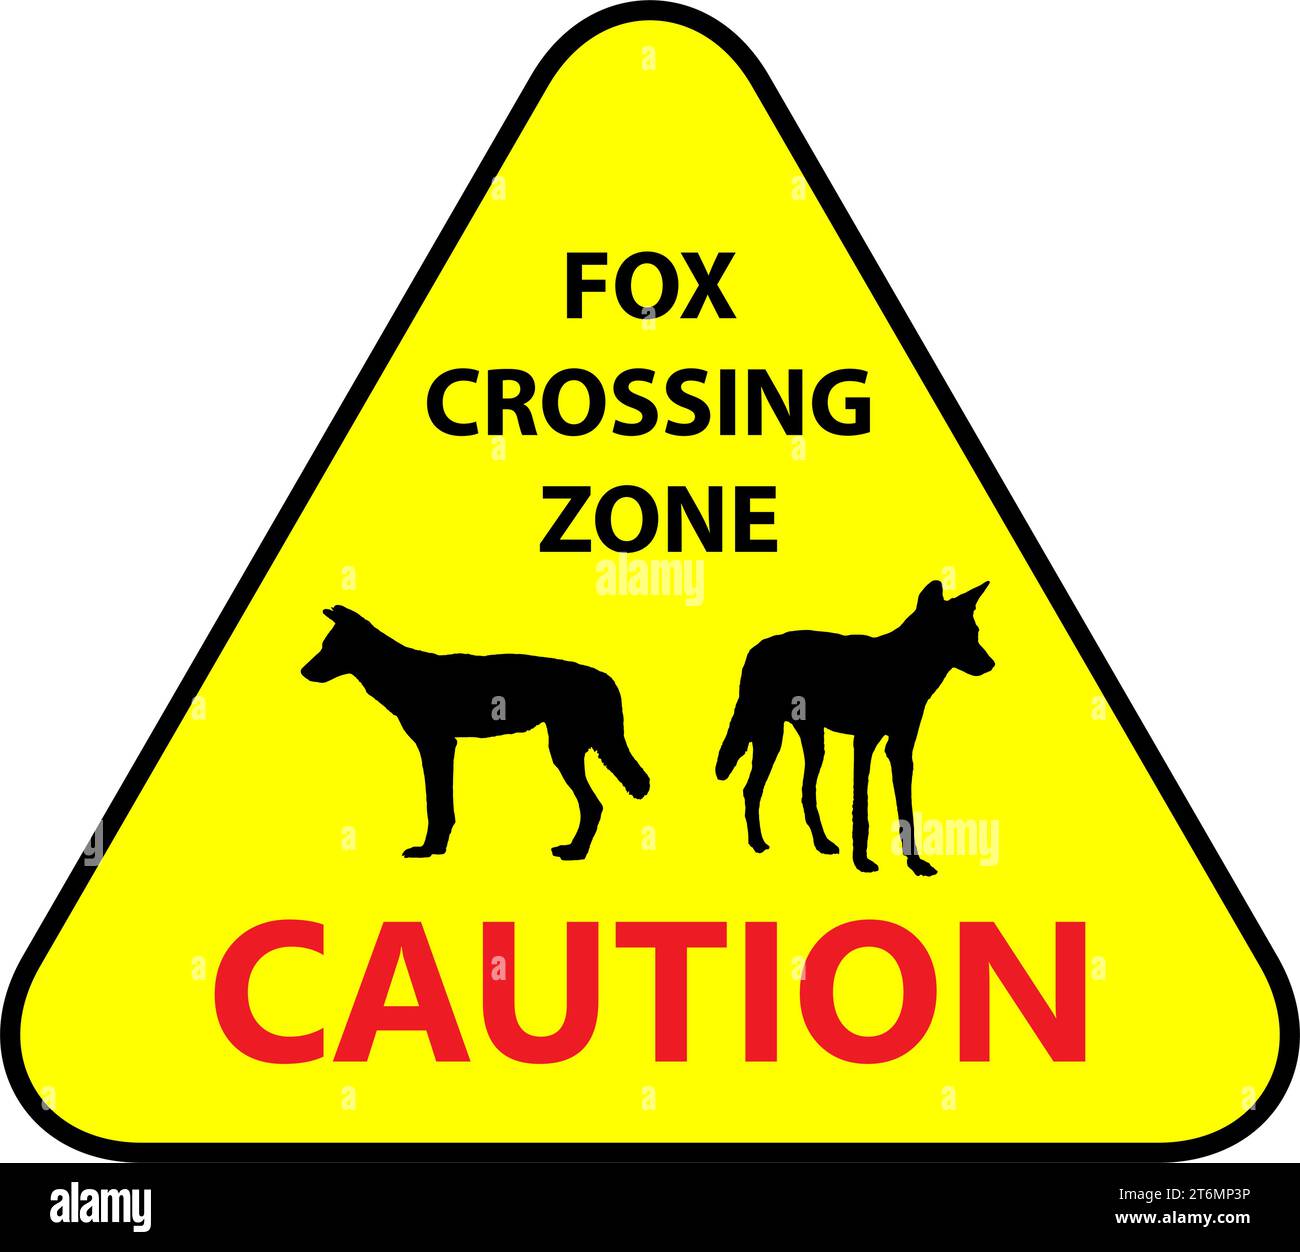 Panneau jaune : Fox Crossing zone. Conduisez lentement pour la sécurité des animaux. Commun sur route. Illustration vectorielle sur fond blanc. Illustration de Vecteur